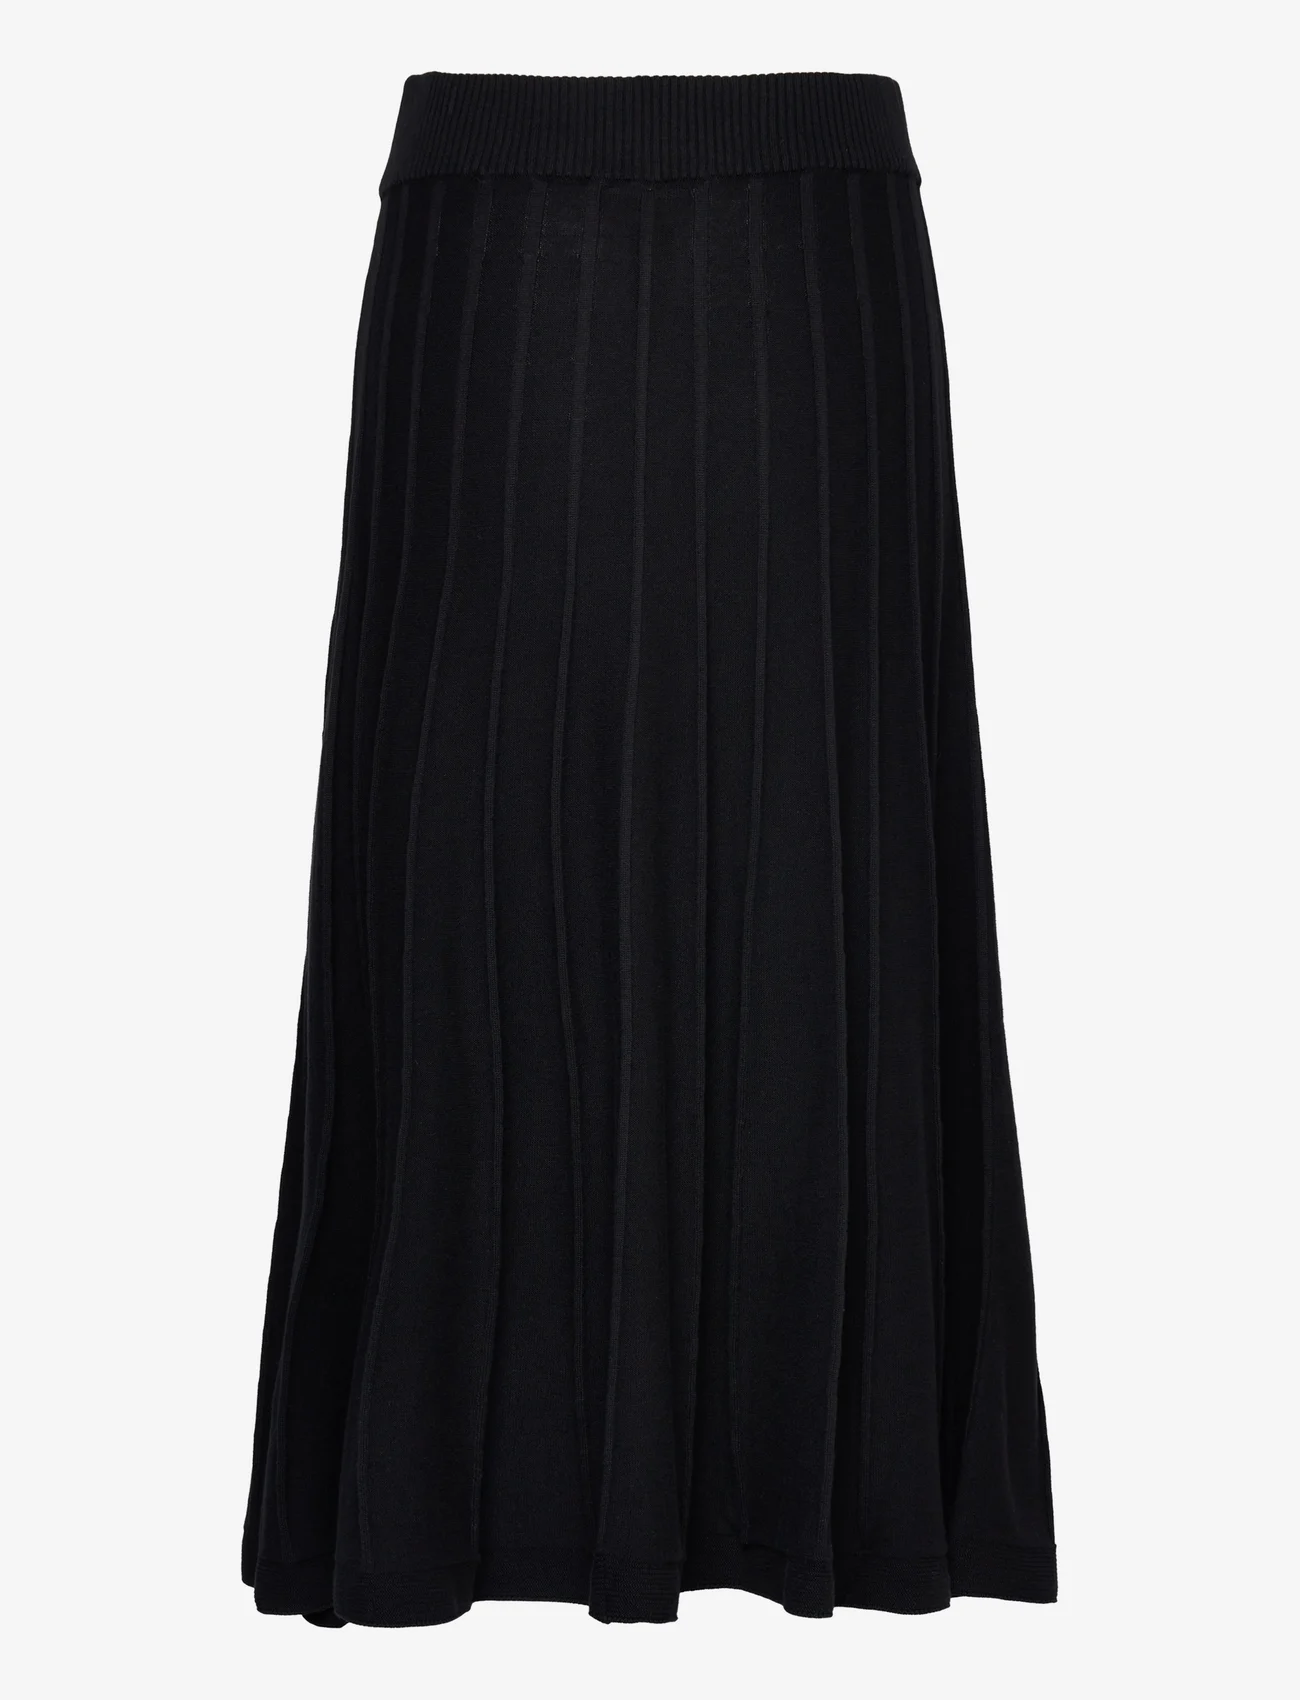 Jumperfabriken - Klara skirt Black - knitted skirts - black - 1